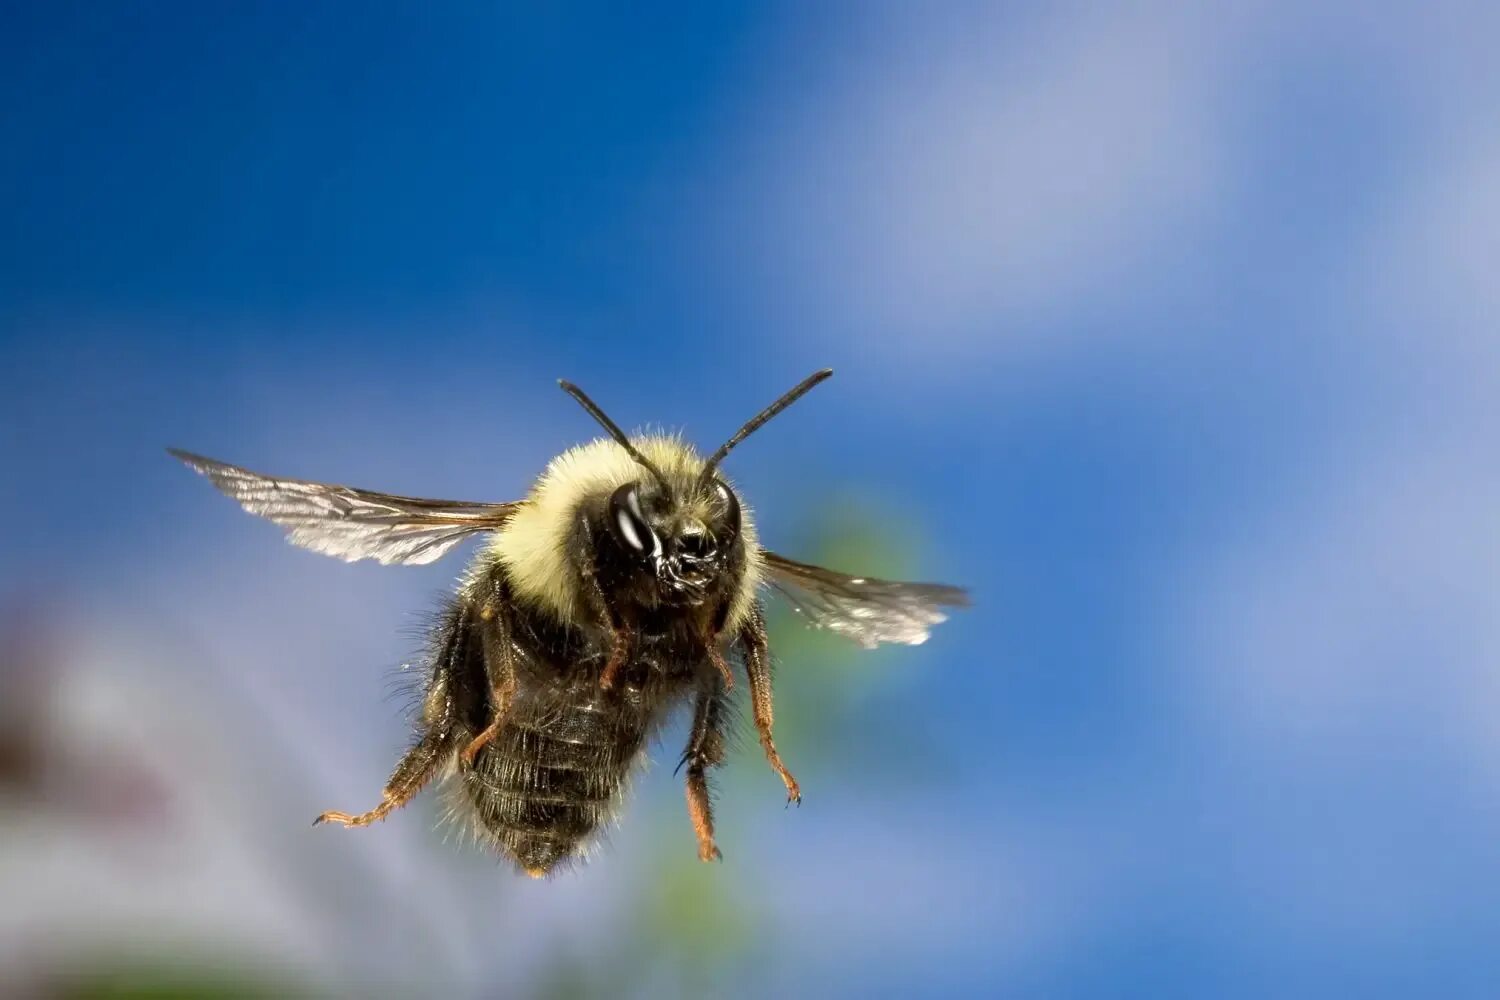 Bee fly. Шмель насекомое. Шмель в полете. Пчела в полете. Пчела летит.